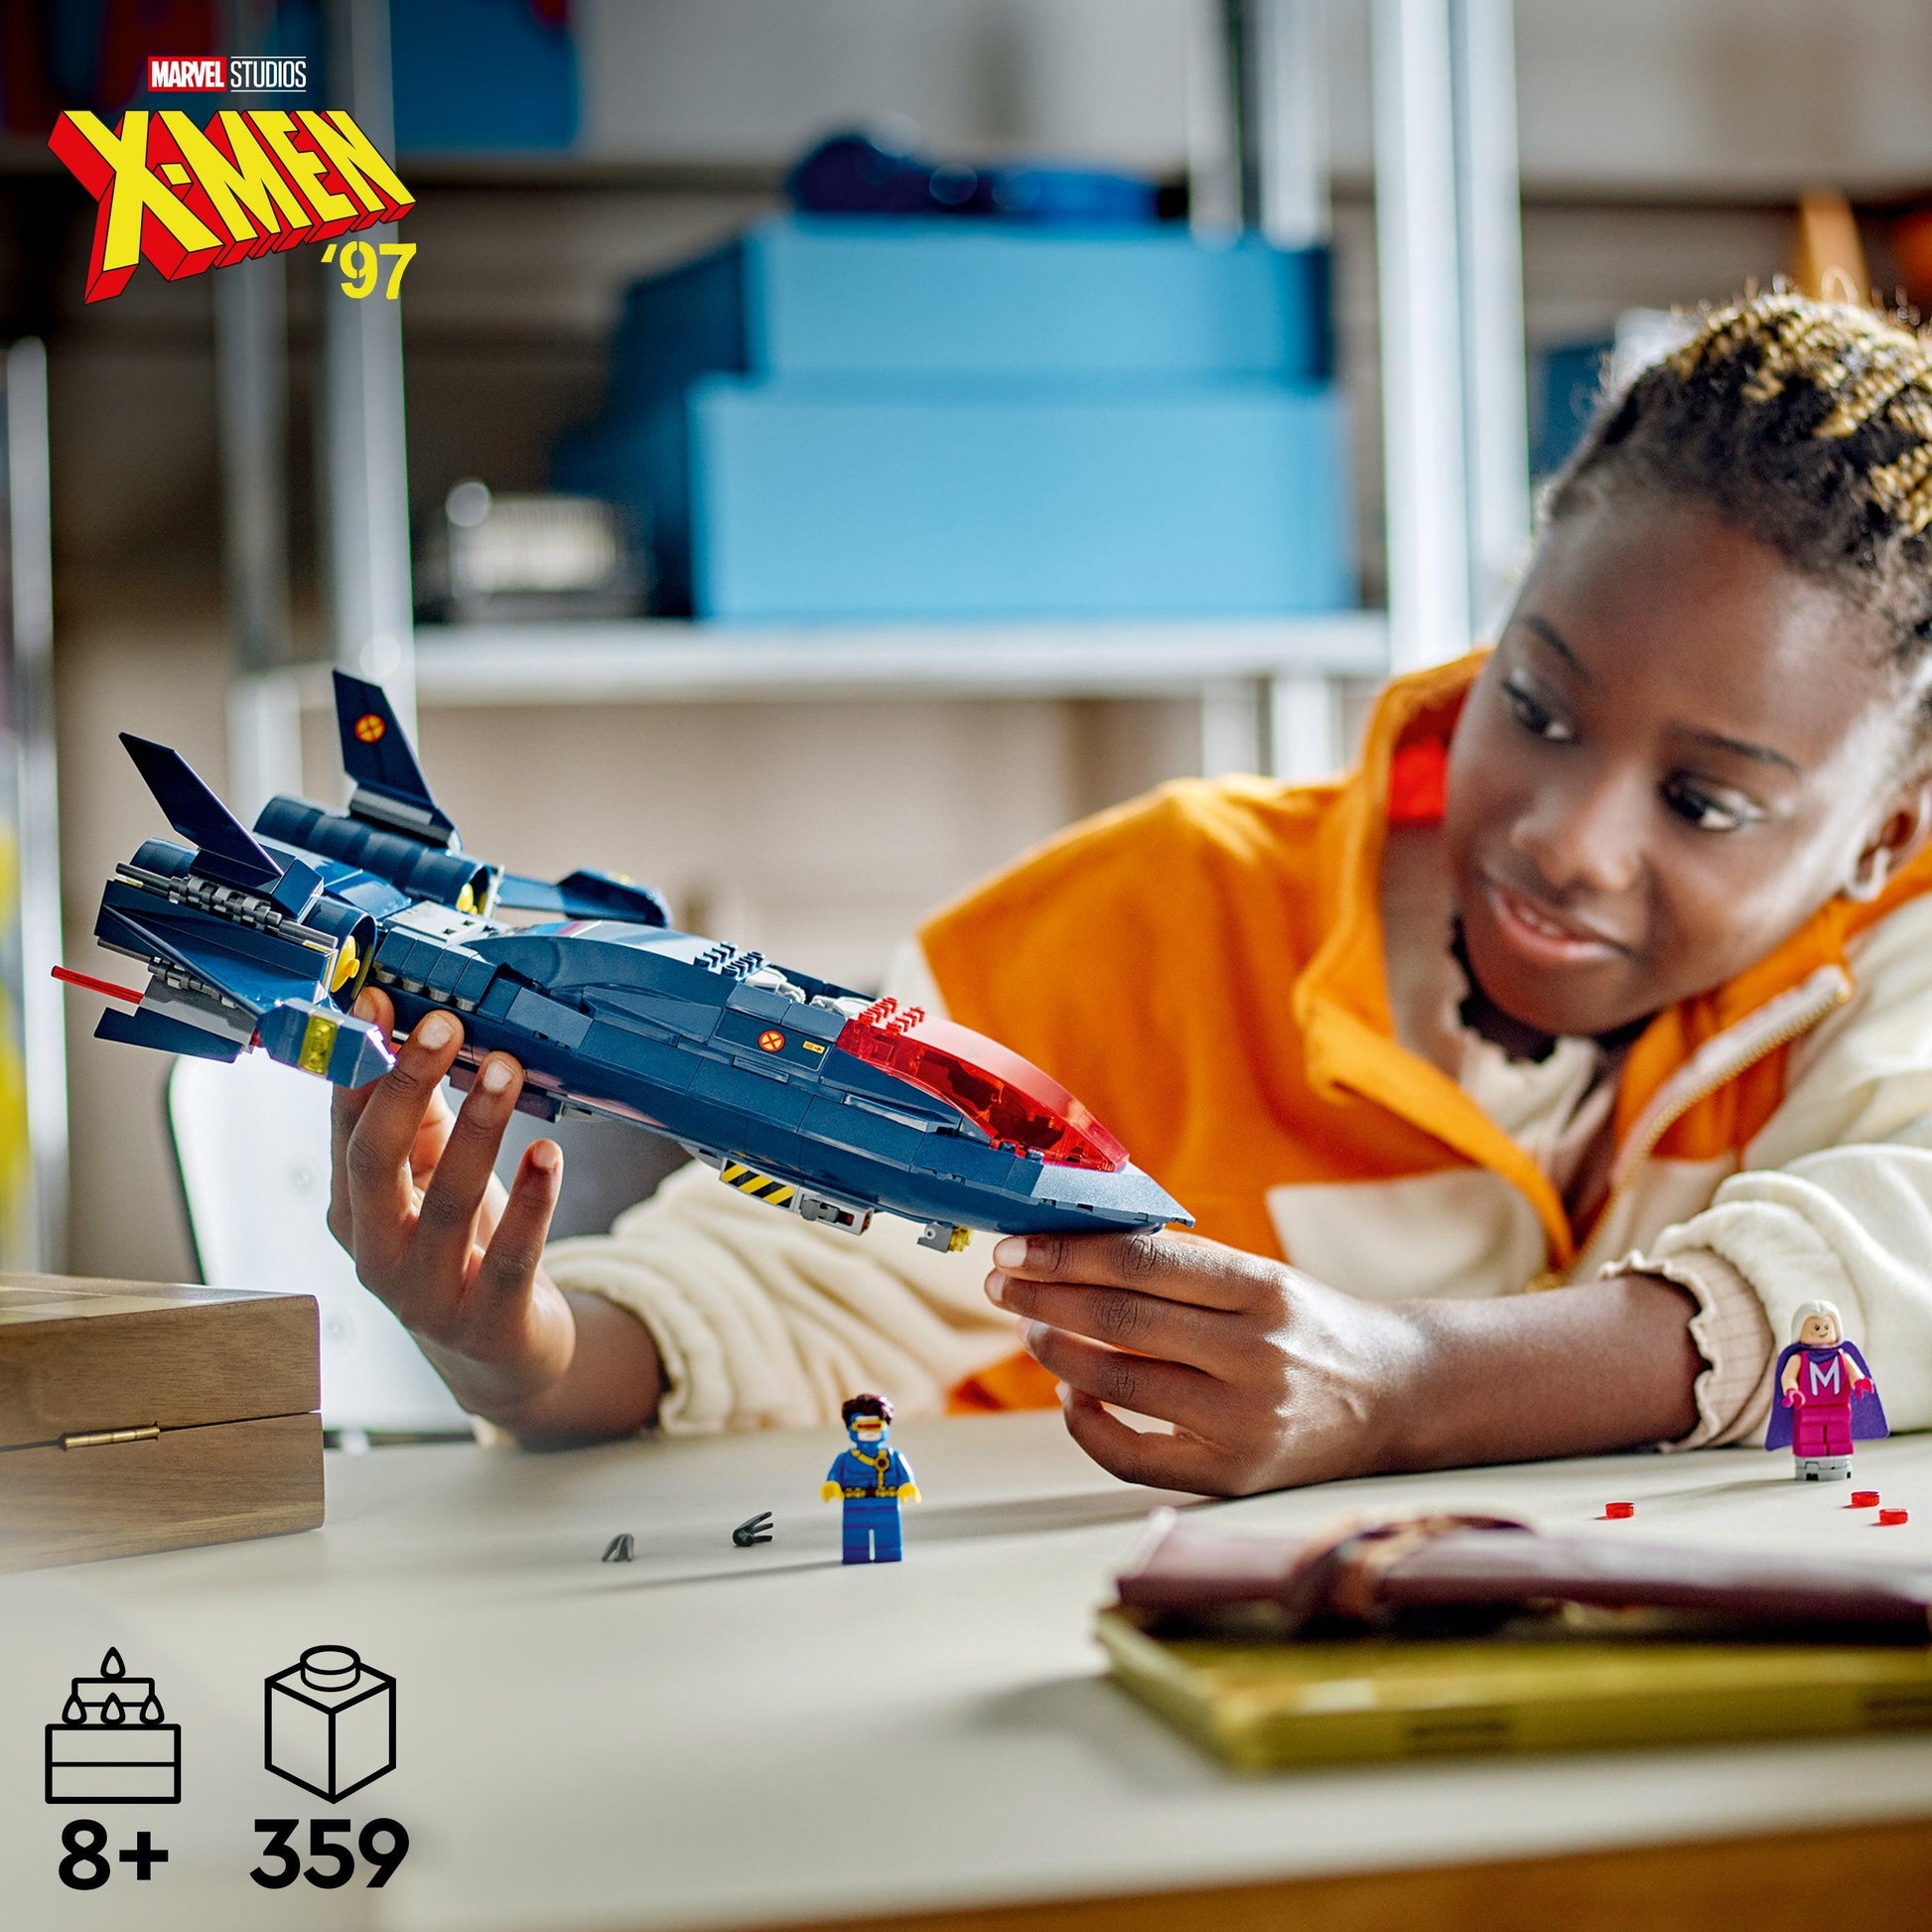 LEGO X-Men X-Jet 76281 Superheroes | 2TTOYS ✓ Official shop<br>